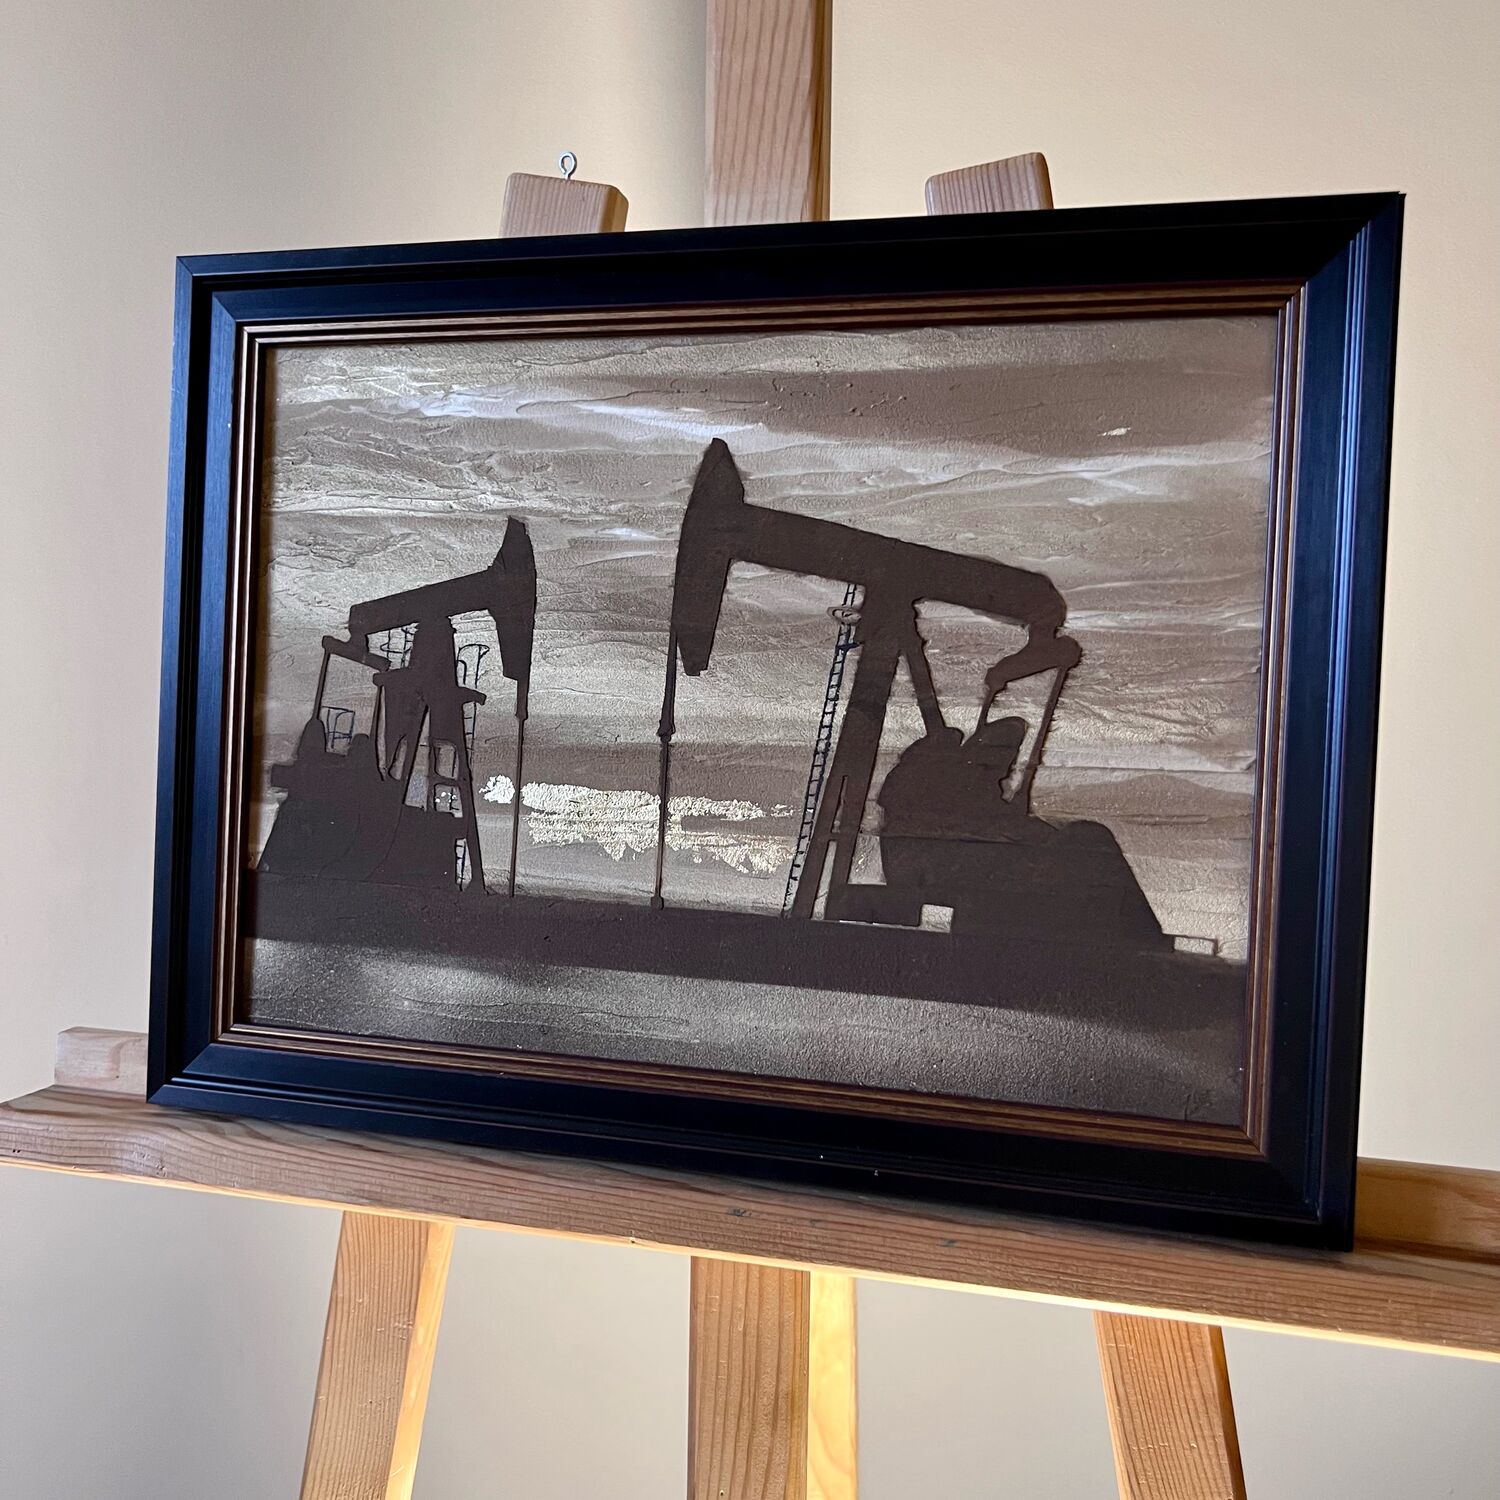 Картины нефтью